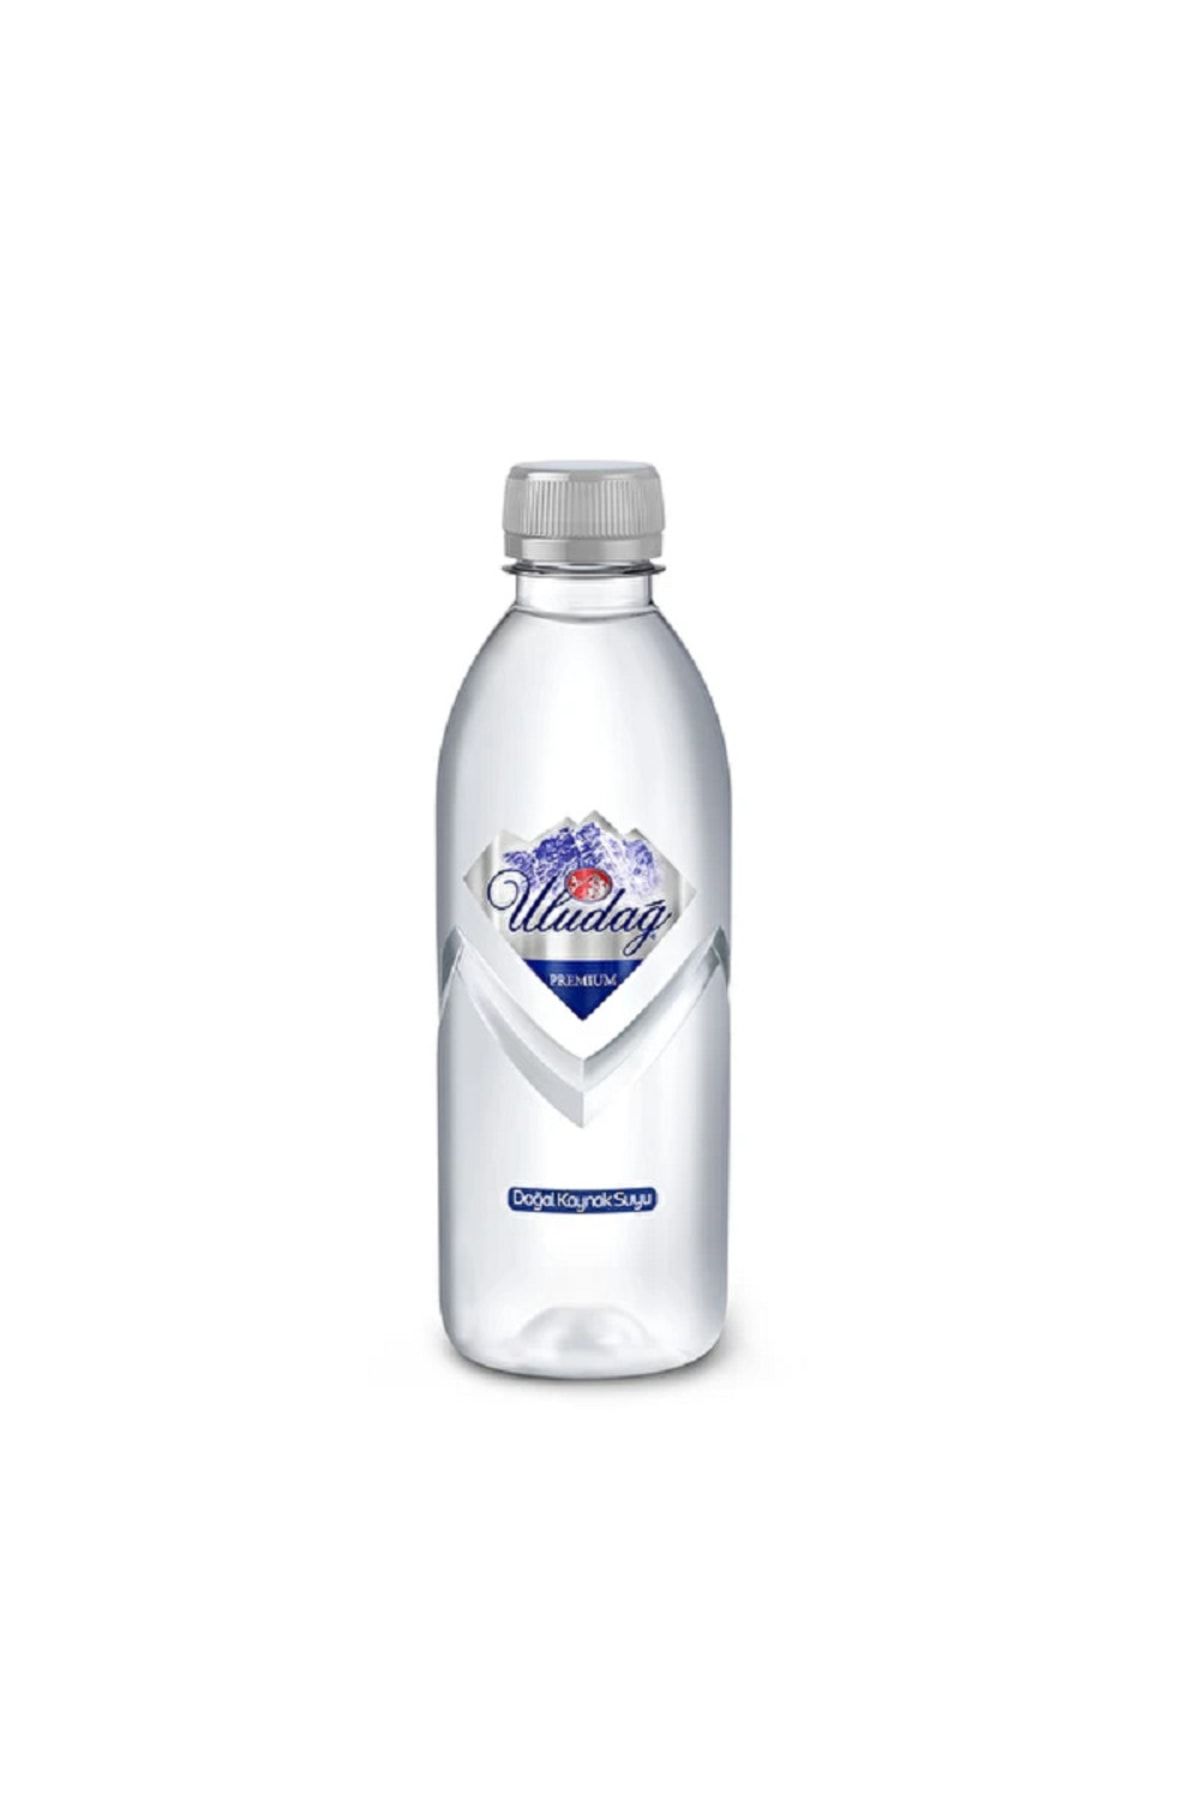 Uludağ Premium Doğal Kaynak Suyu Pet Şişe 12 X 400 Ml